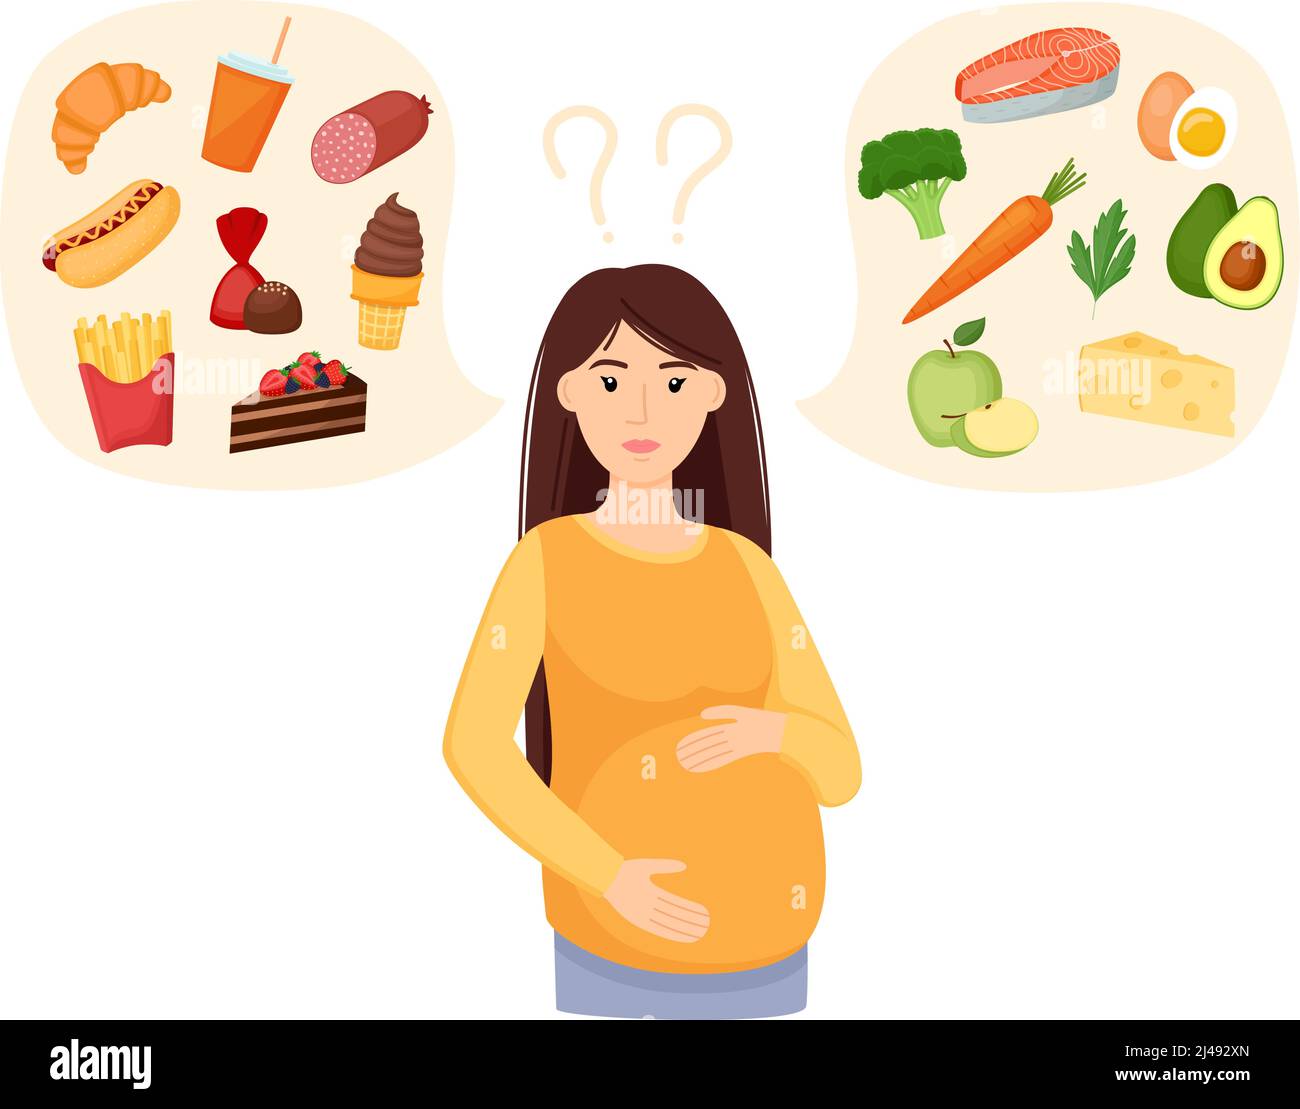 Schwanger Frau Wahl zwischen gesunden und ungesunden Lebensmitteln. Fastfood im Vergleich zu einem ausgewogenen Menü. Essen während der Schwangerschaft. Konzeptvektordarstellung Stock Vektor